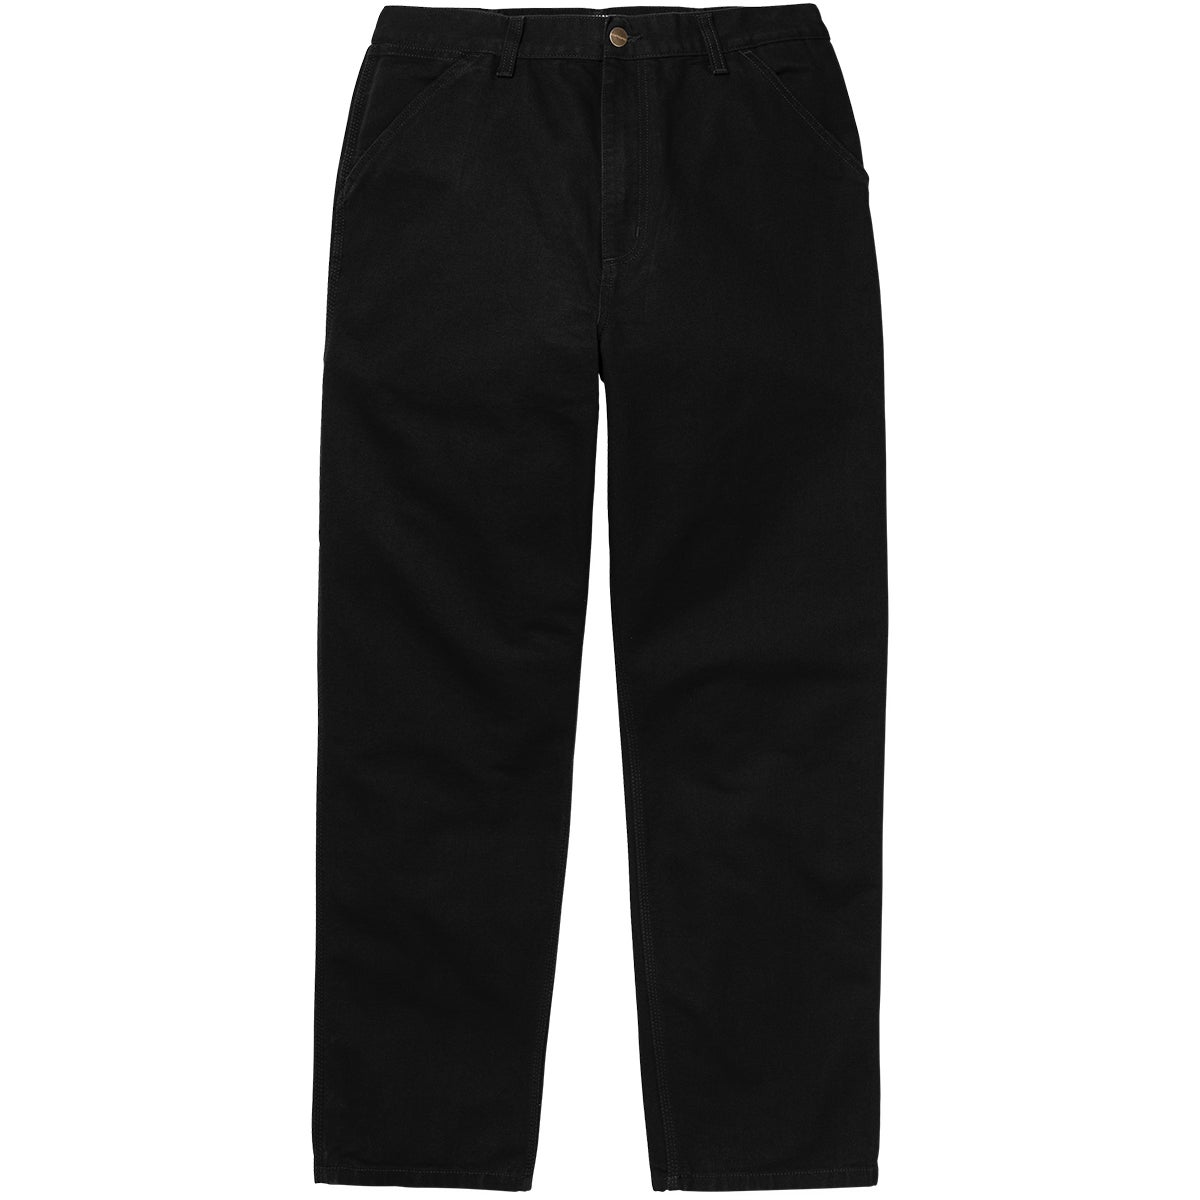 Carhartt WIP Single Knee Pant in Black | Boardertown